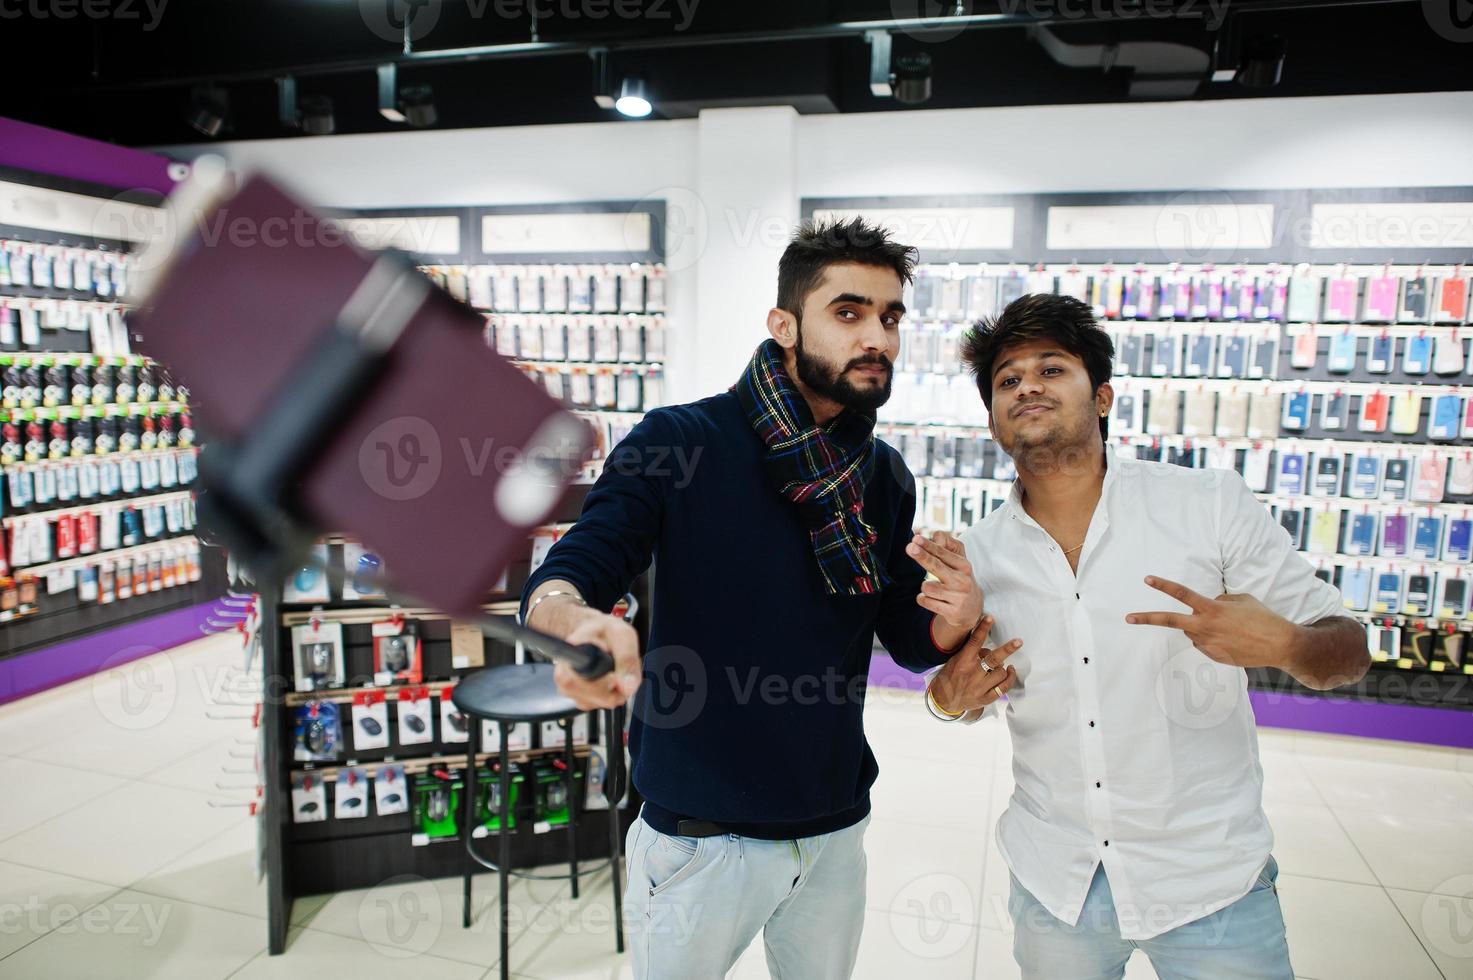 dos indios sirven al comprador del cliente en el teléfono móvil haciendo selfie con un palo monopie. concepto de pueblos y tecnologías del sur de Asia. tienda de celulares foto